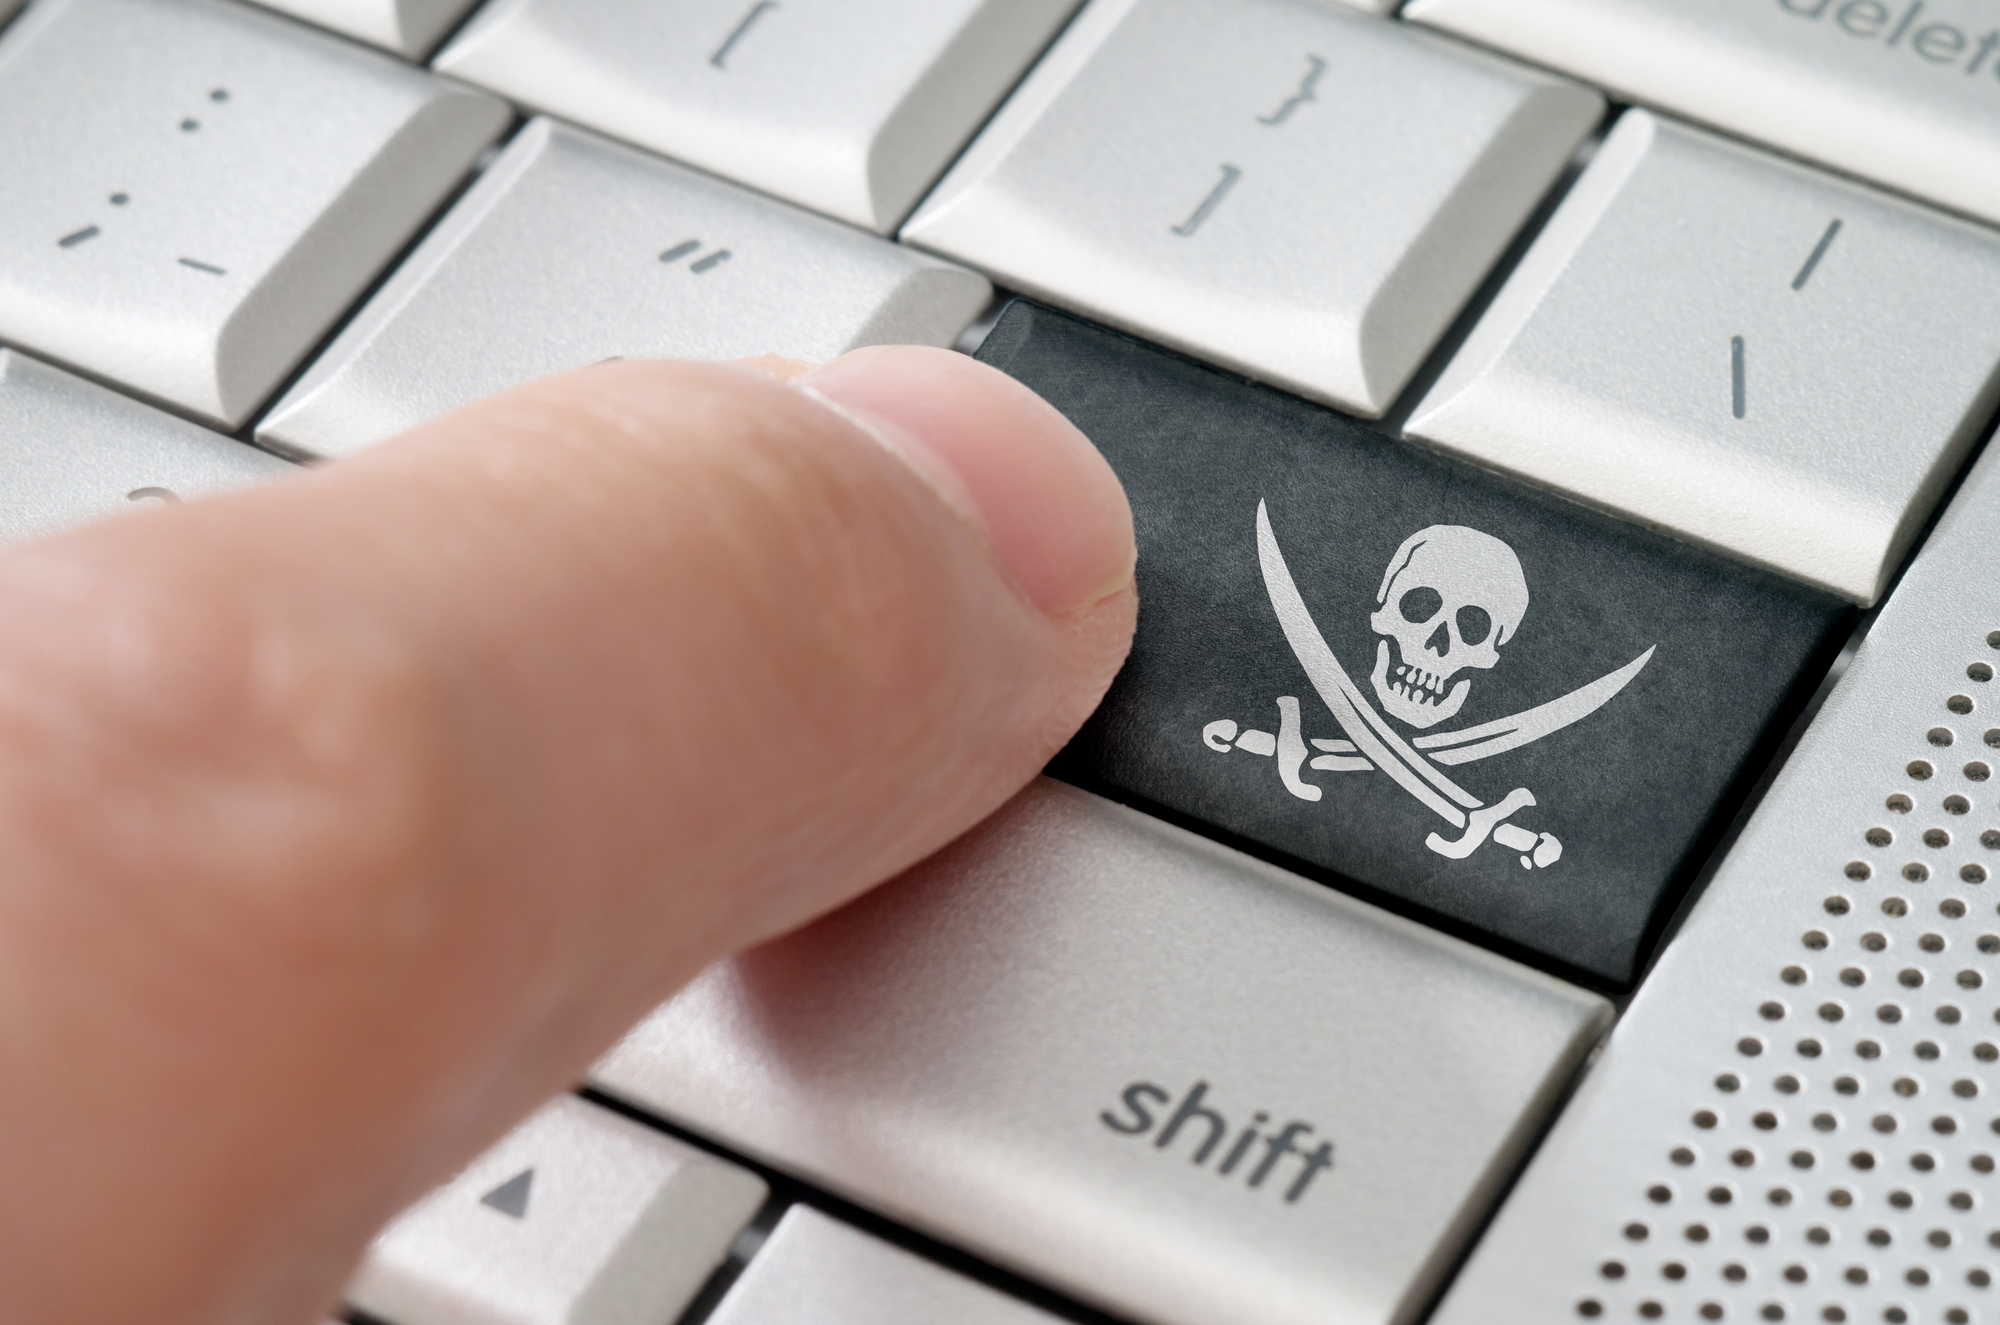 Raubkopierer drückt eine Piratensymbol-Eingabetaste auf einer Laptoptastatur